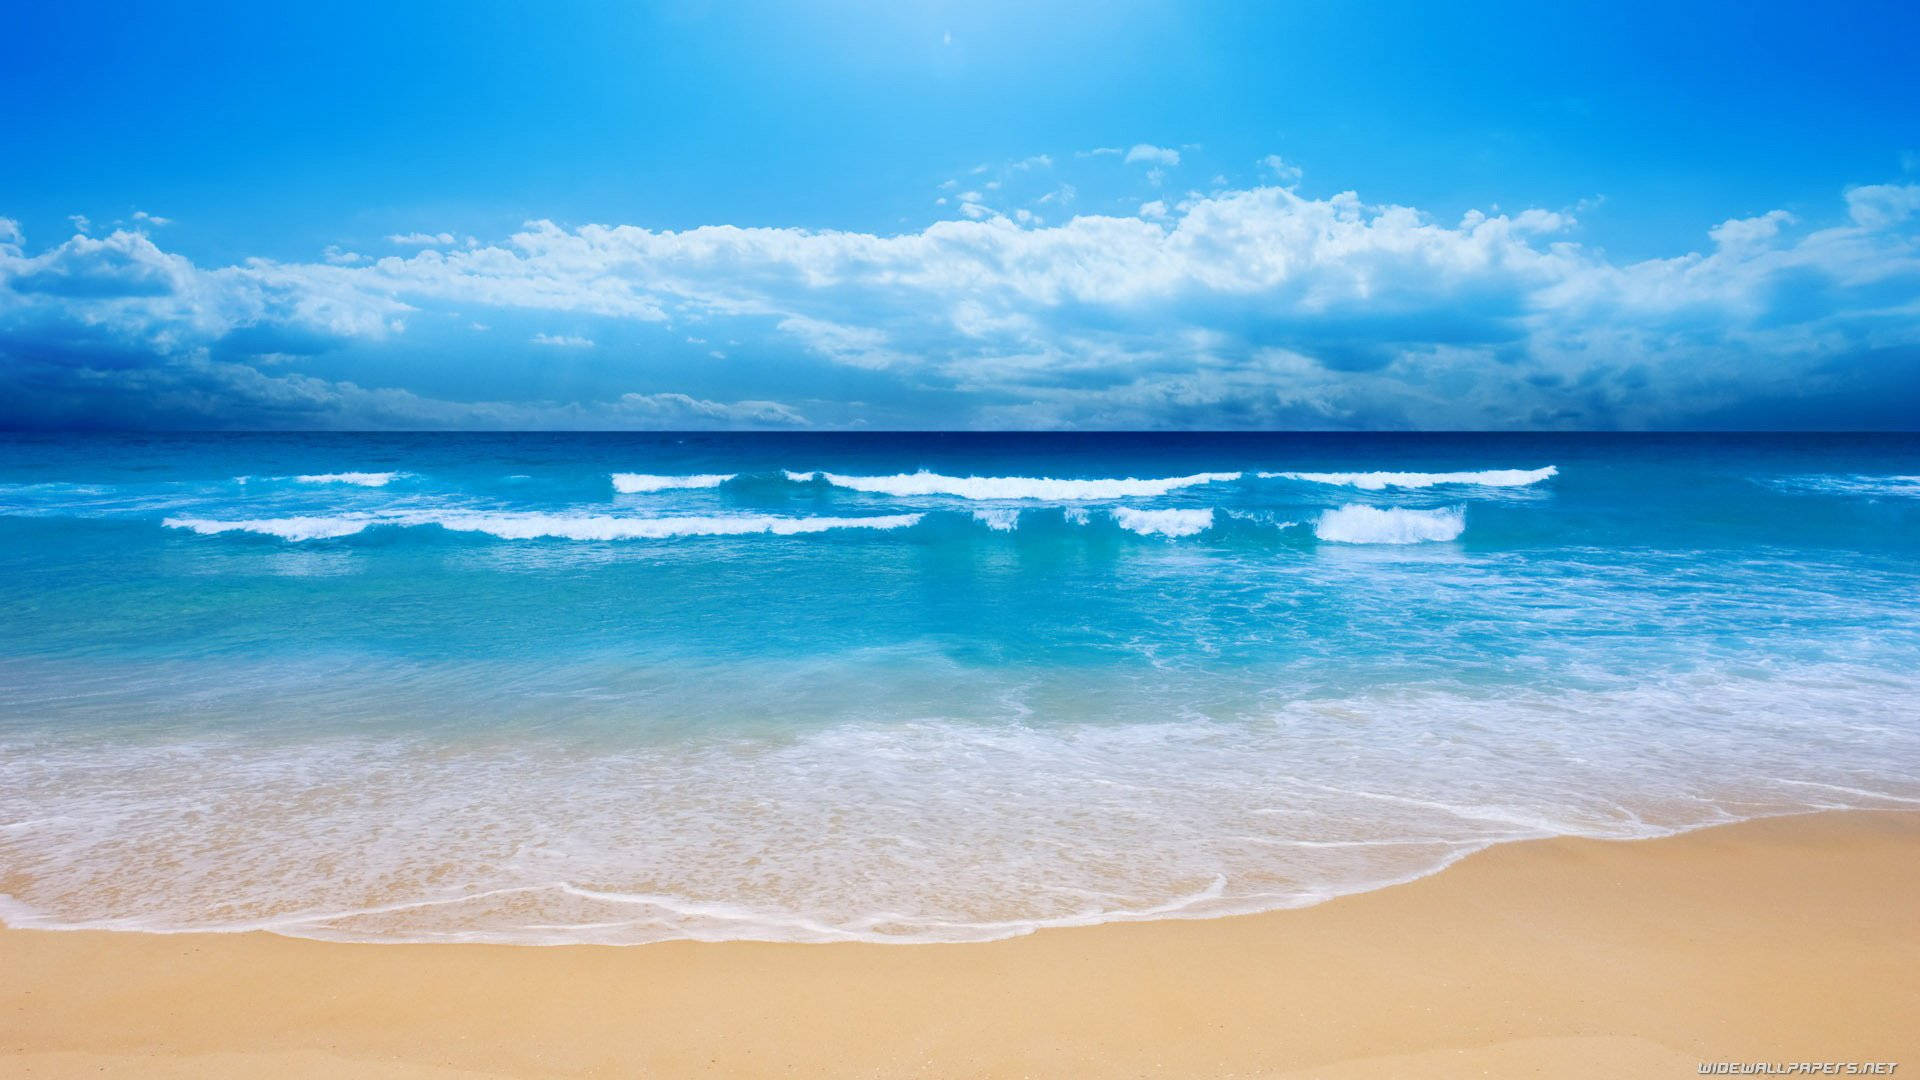 Hình nền bãi biển sẽ mang lại cho bạn cảm giác thư giãn và yên bình. Đó là một nơi tuyệt vời để thoát khỏi cuộc sống bận rộn và tìm kiếm sự an tĩnh. Tải xuống những hình nền bãi biển đẹp nhất và thư giãn ngay bây giờ. 